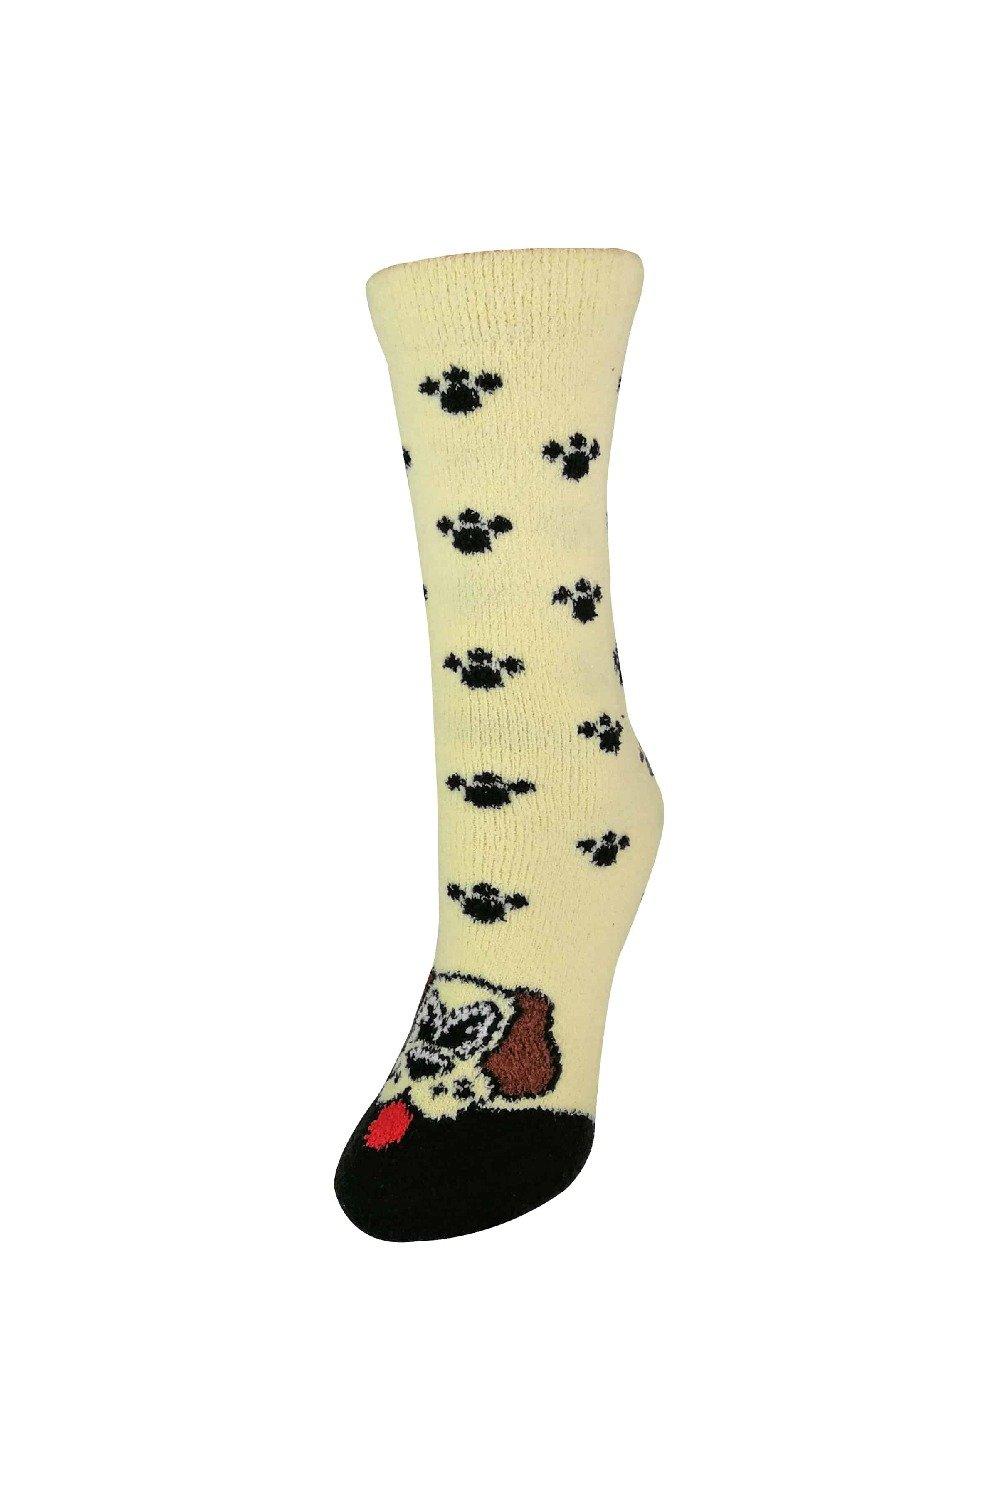 Soft Fluffy Non Slip Slipper Socks with Animal Designs